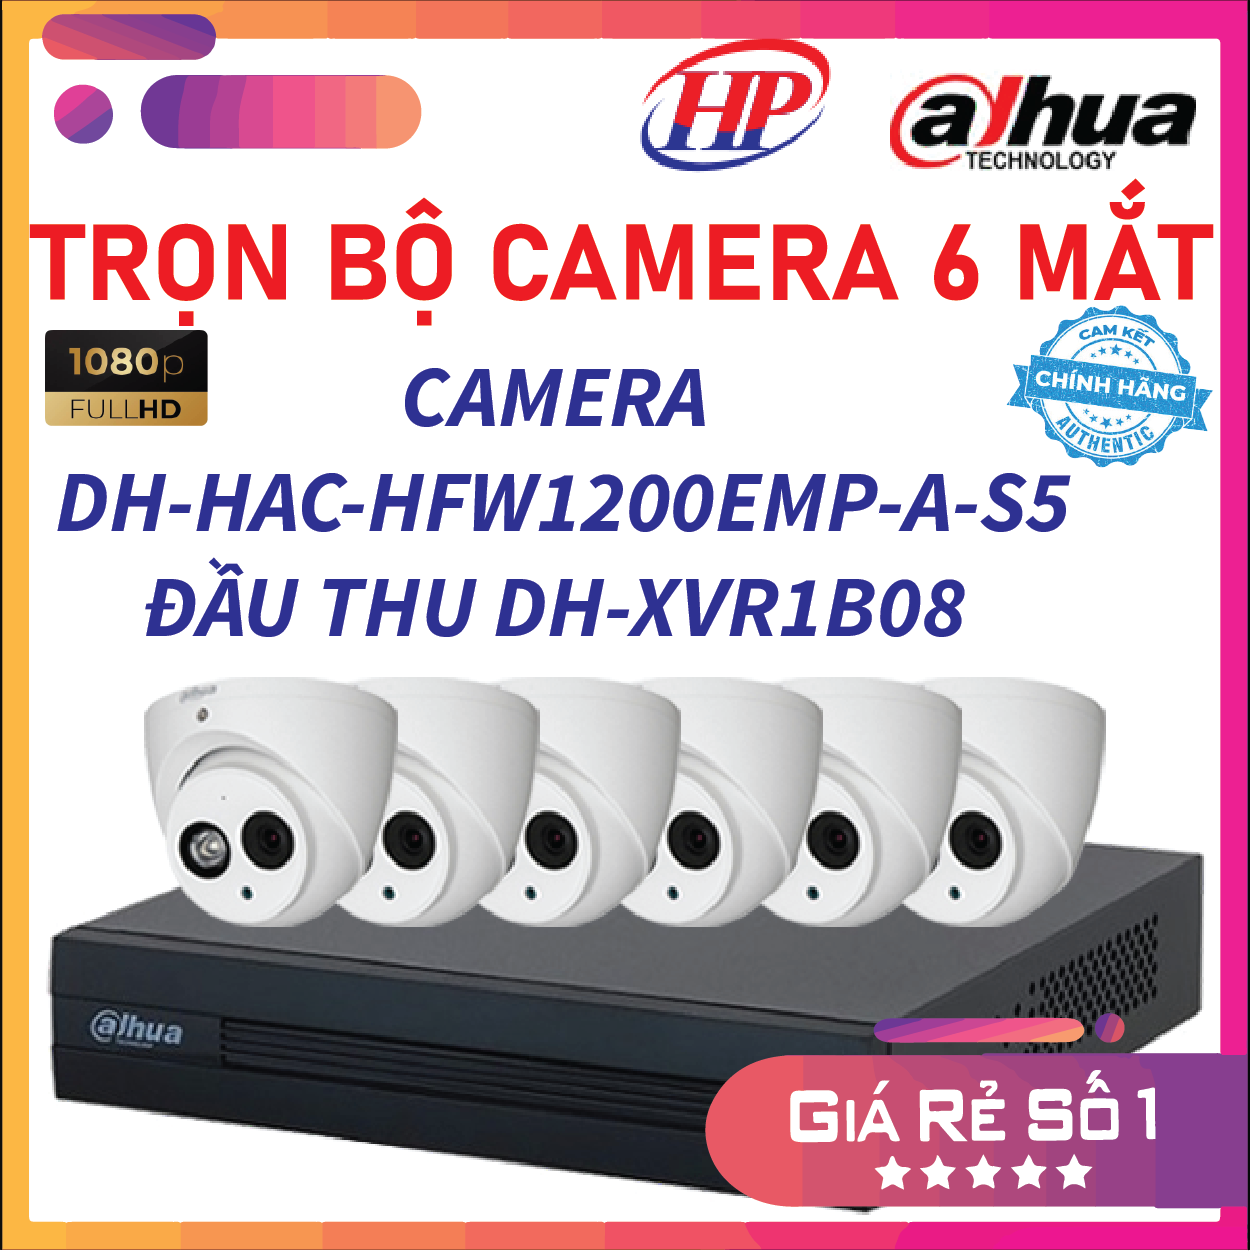 Trọn bộ 06 Camera HDCVI 2MP DAHUA DH-HAC-HDW1200EMP-A-S5 - Đầu thu 4 cổng DH-XVR1B08 đầy đủ phụ kiện, Hàng chính hãng